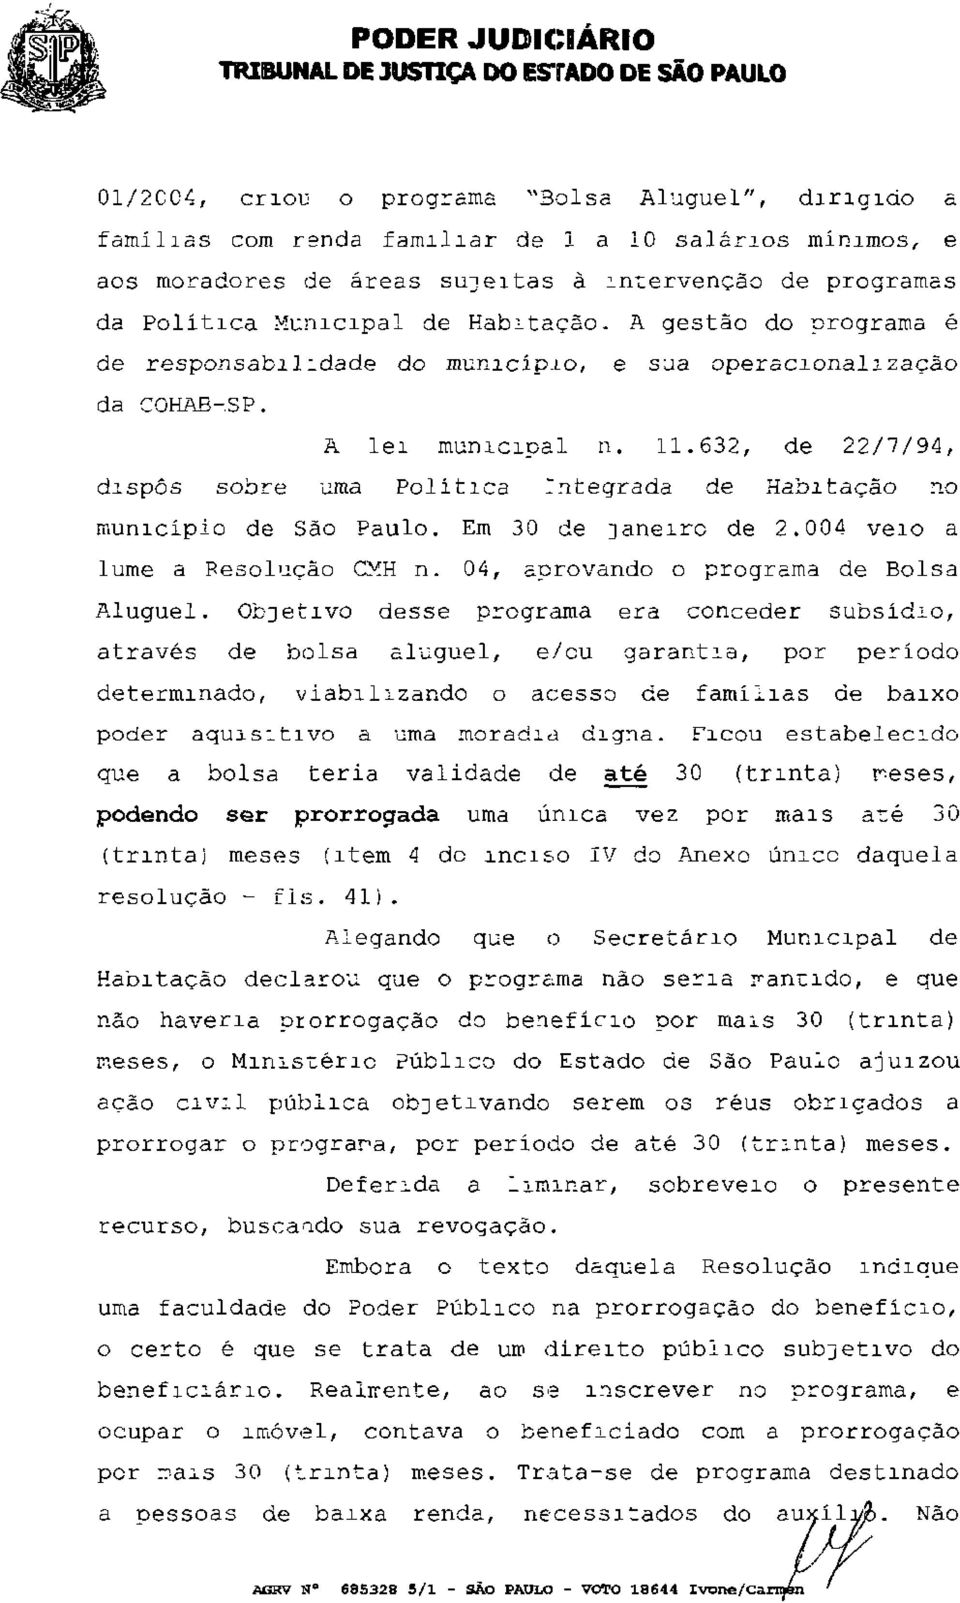 632, de 22/7/94, dispôs sobre uma Política integrada de Habitação no município de São Paulo. Em 30 de janeiro de 2.004 veio a lume a Resolução CMH n. 04, aprovando o programa de Bolsa Aluguel.